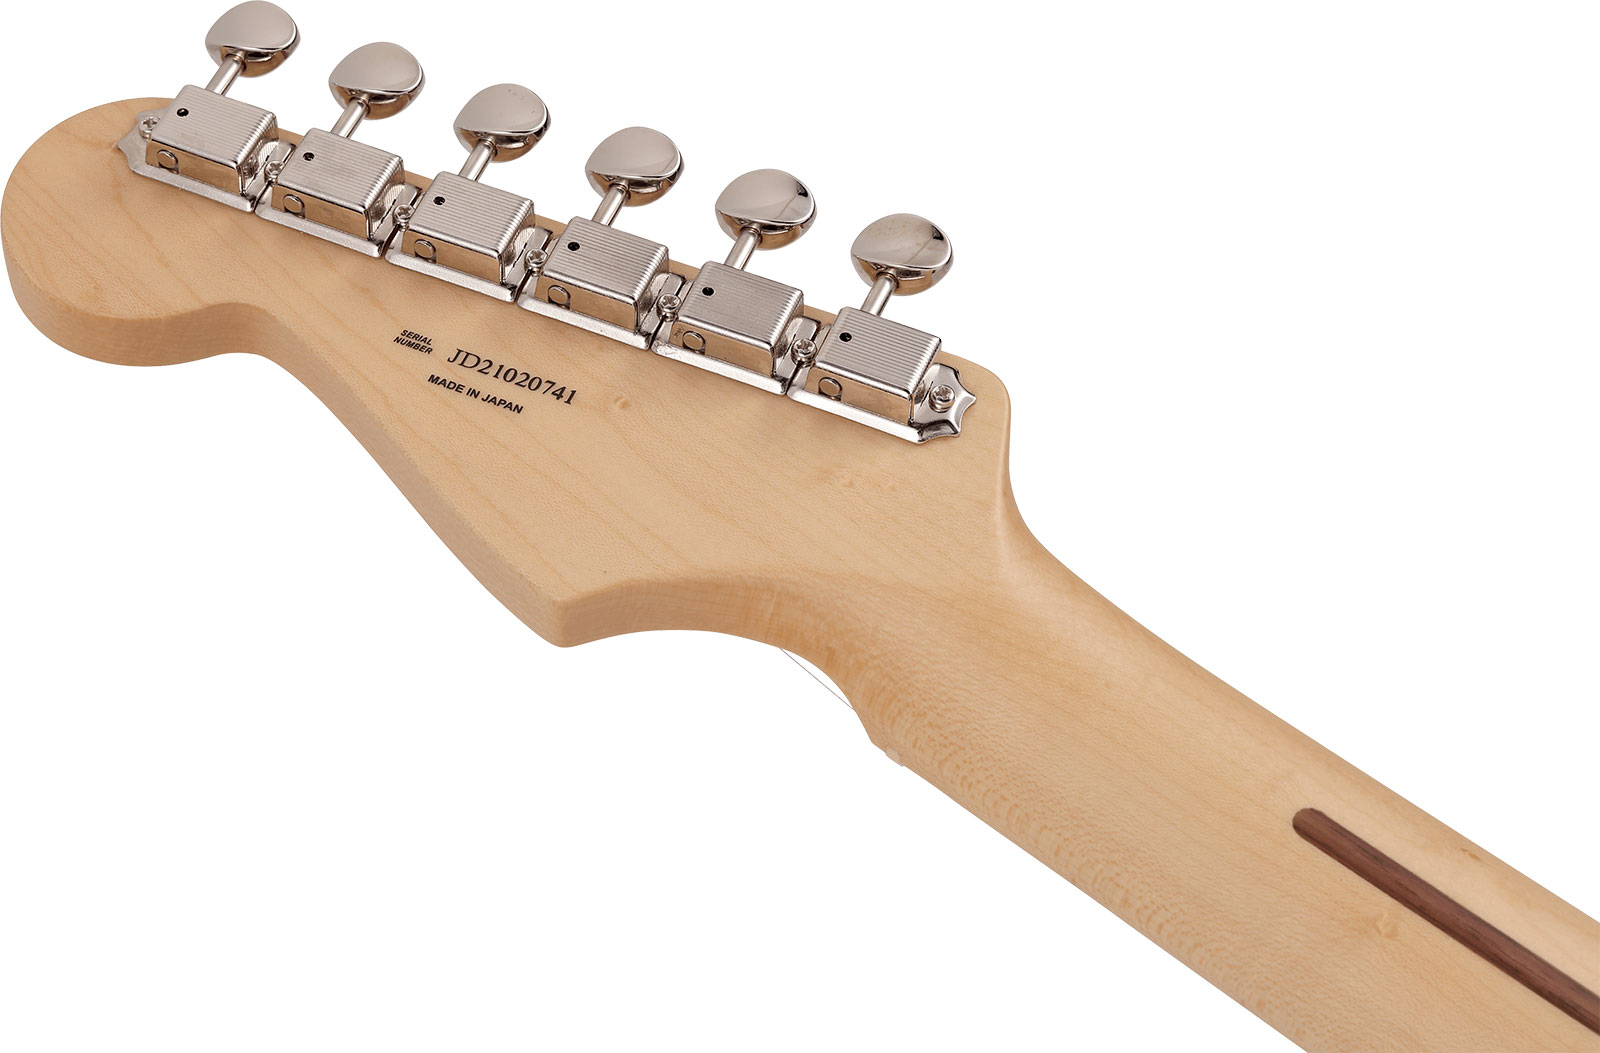 Fender Strat Junior Mij Jap 3s Trem Rw - Satin Shell Pink - Electric guitar for kids - Variation 3